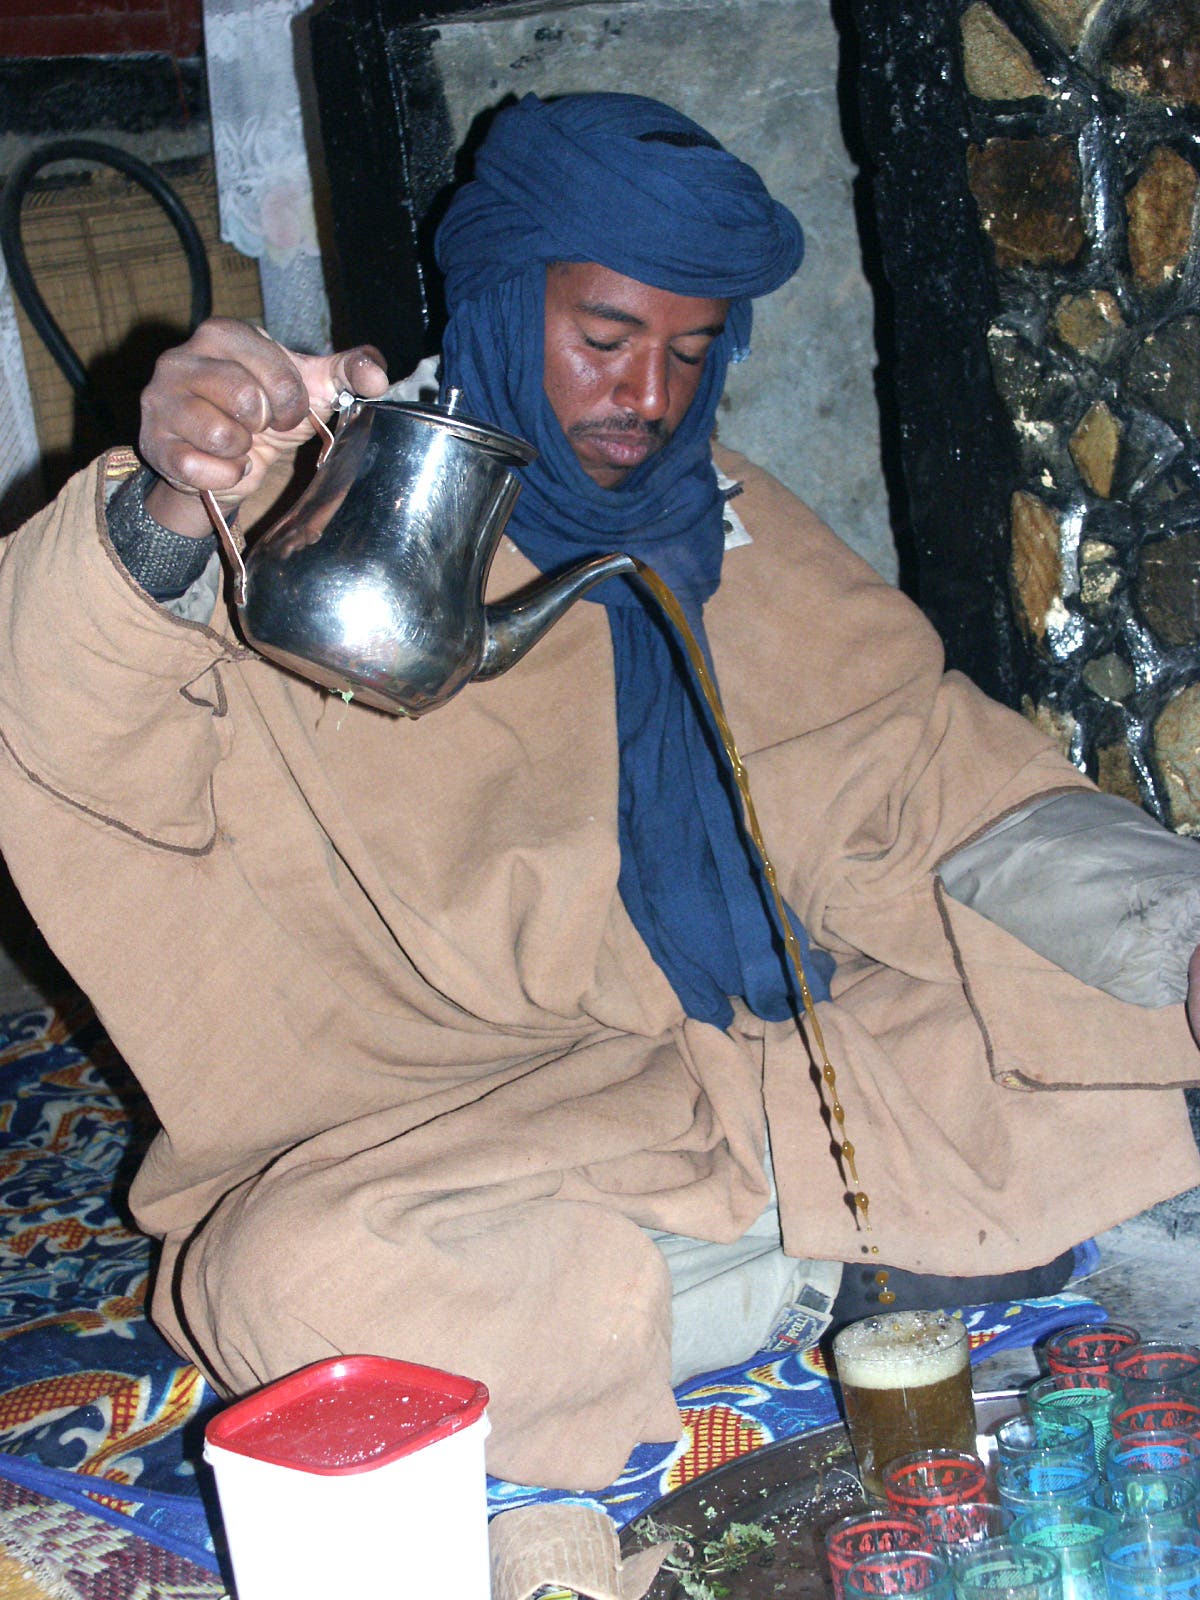 Bei einer Teezeremonie wird Tee aus einer Kanne in hohem Bogen in Gläser gegossen